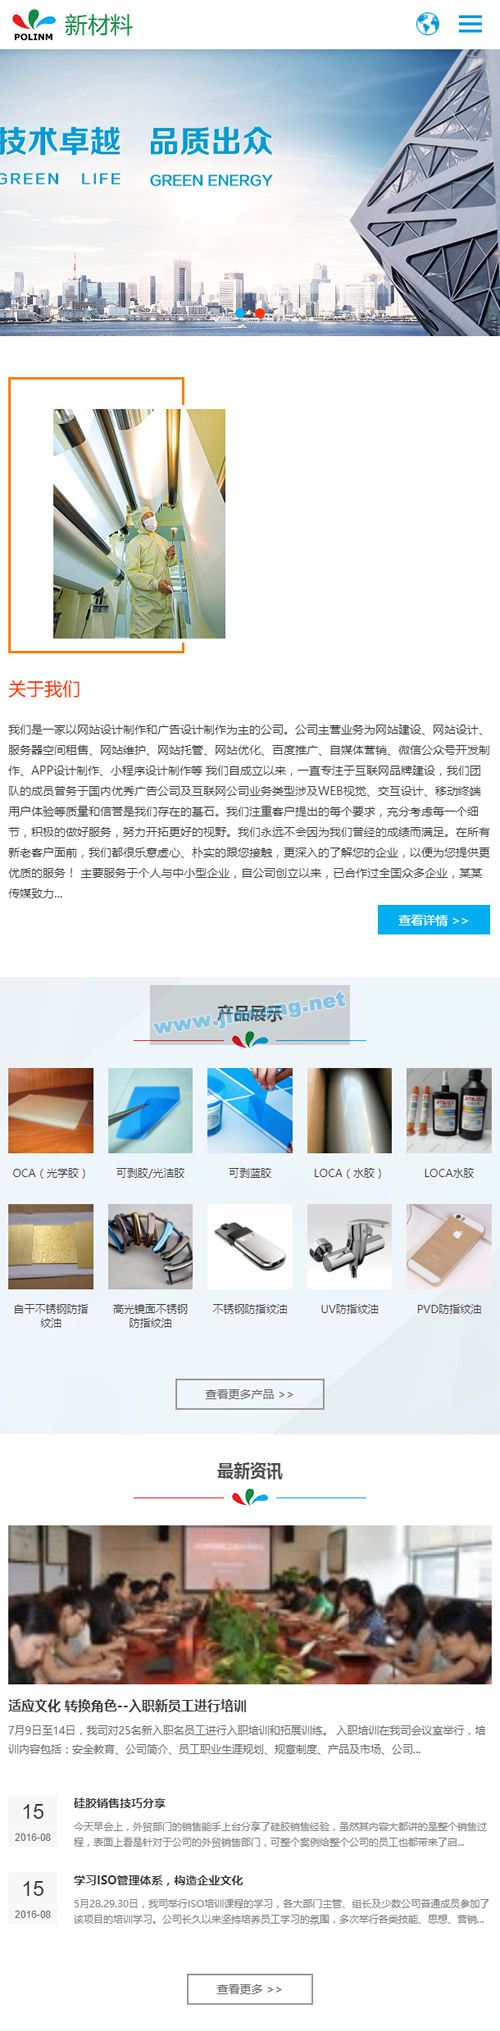 中英文双语响应式新材料类网站源码 HTML5新型环保材料网站织梦dedecms模板